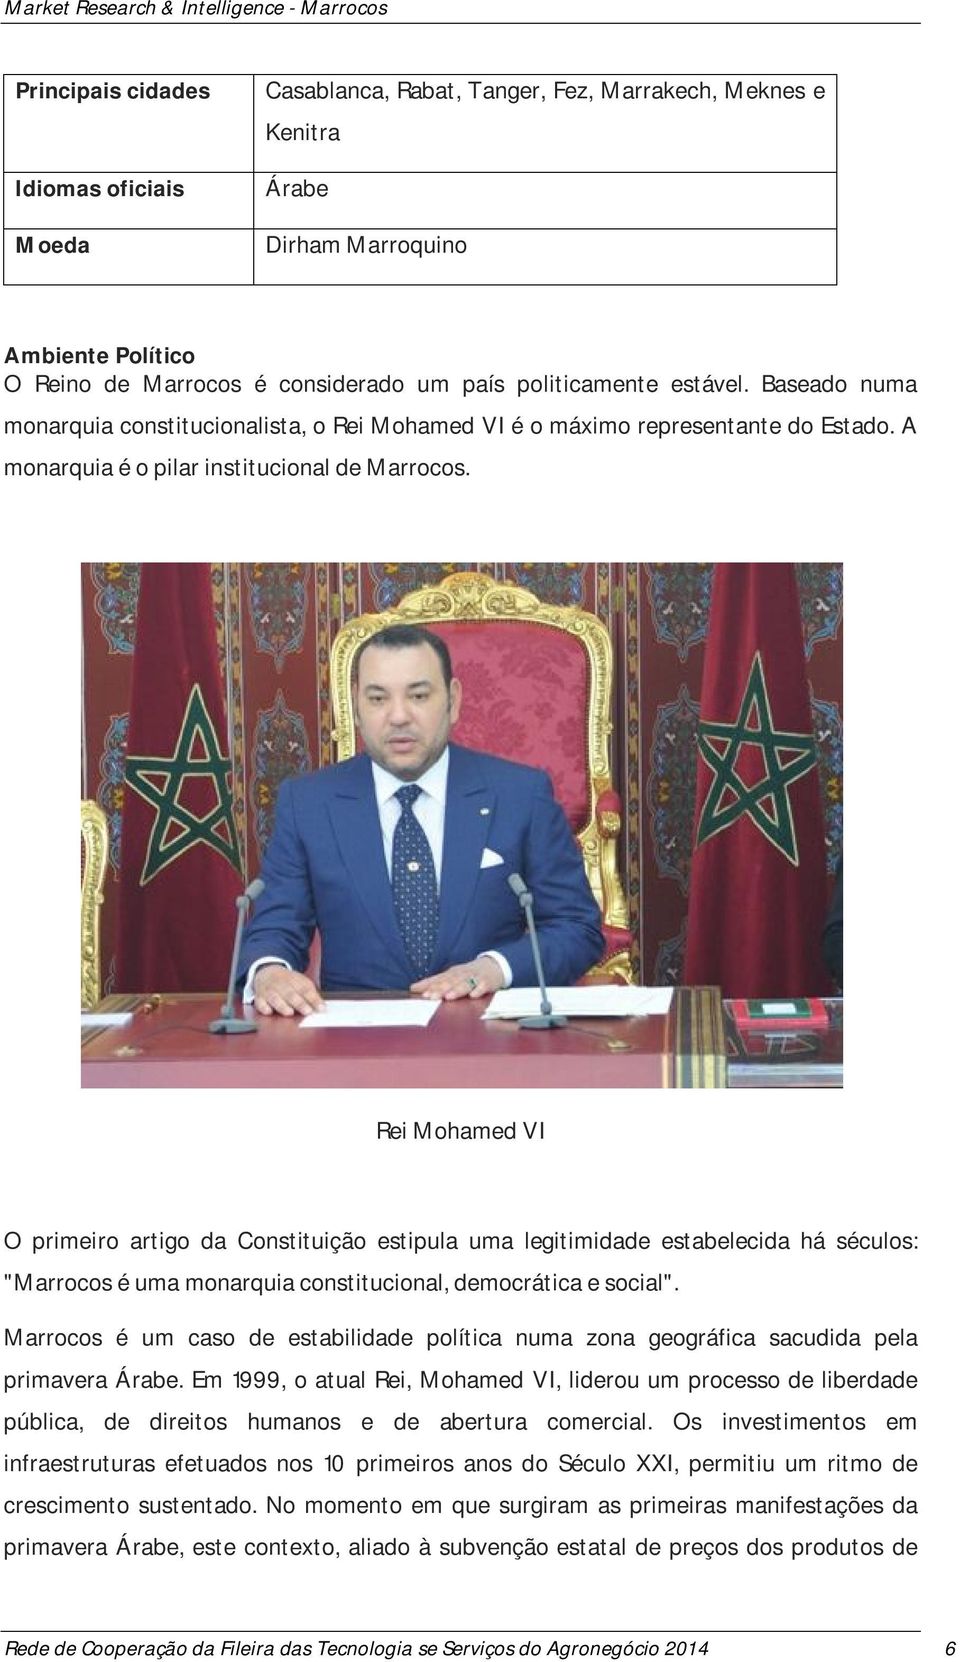 Rei Mohamed VI O primeiro artigo da Constituição estipula uma legitimidade estabelecida há séculos: "Marrocos é uma monarquia constitucional, democrática e social".